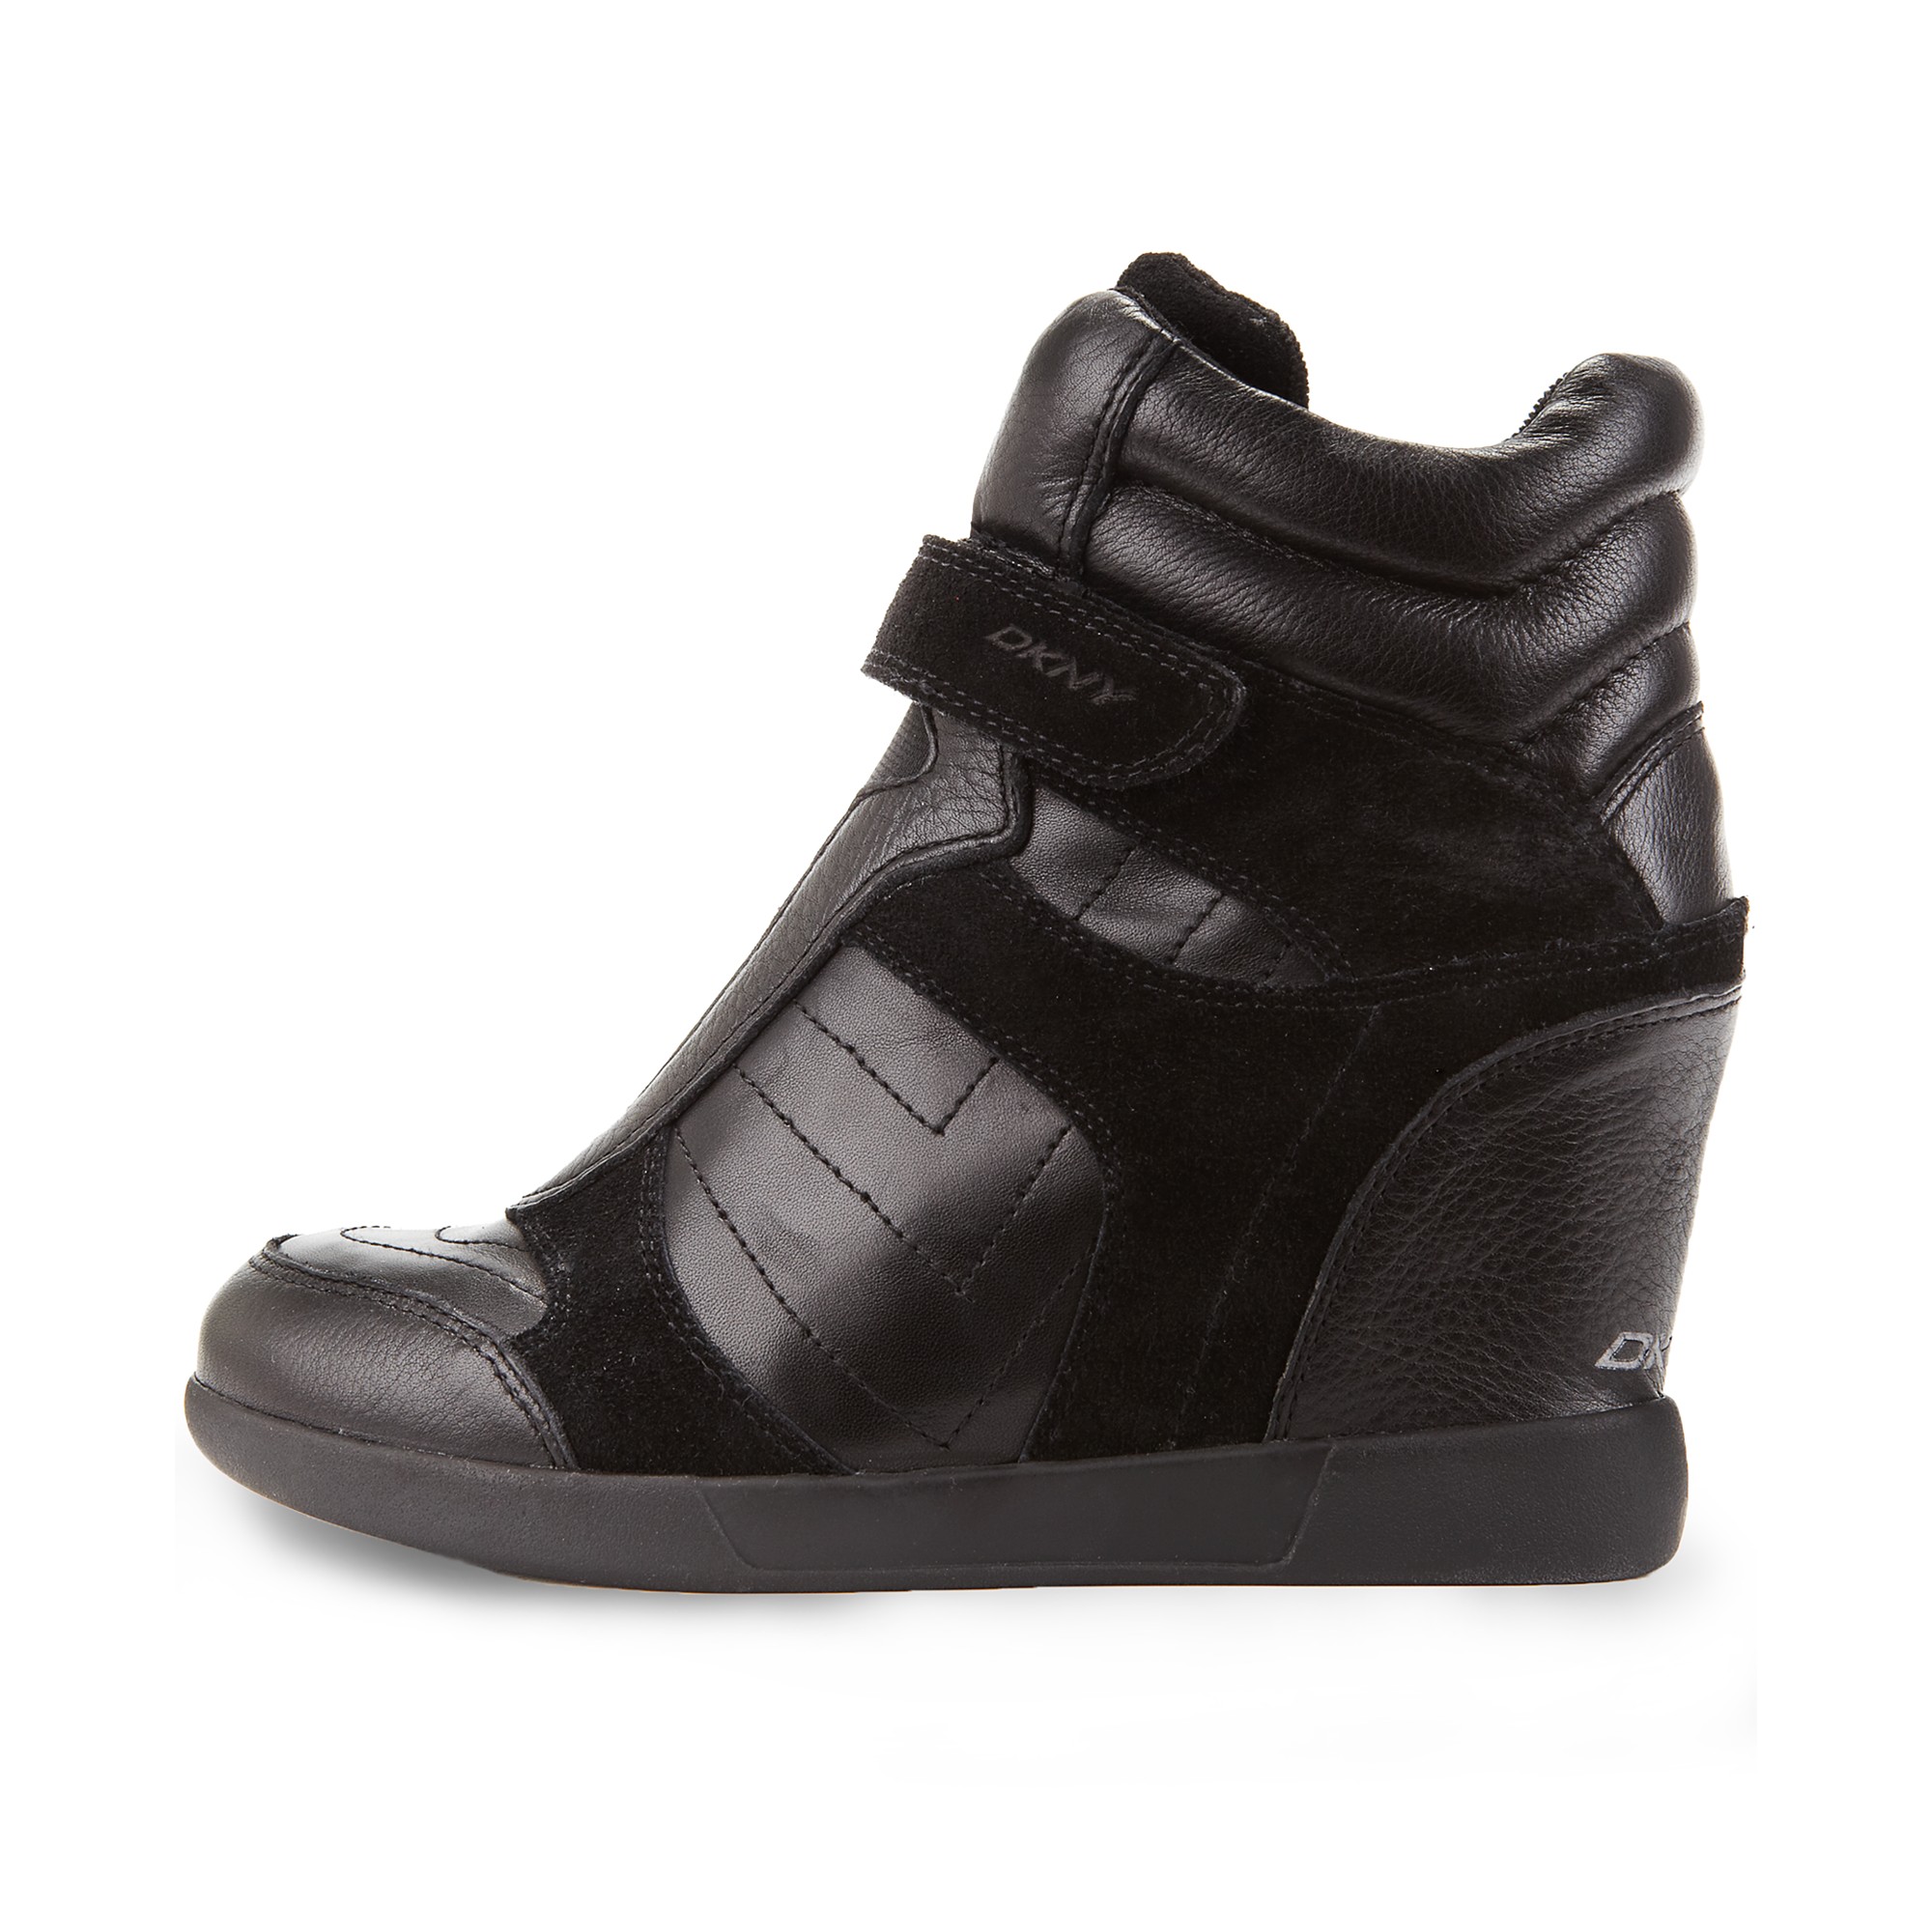 DKNY Heath Wedge Sneakers in Black Leather (Black) - Lyst